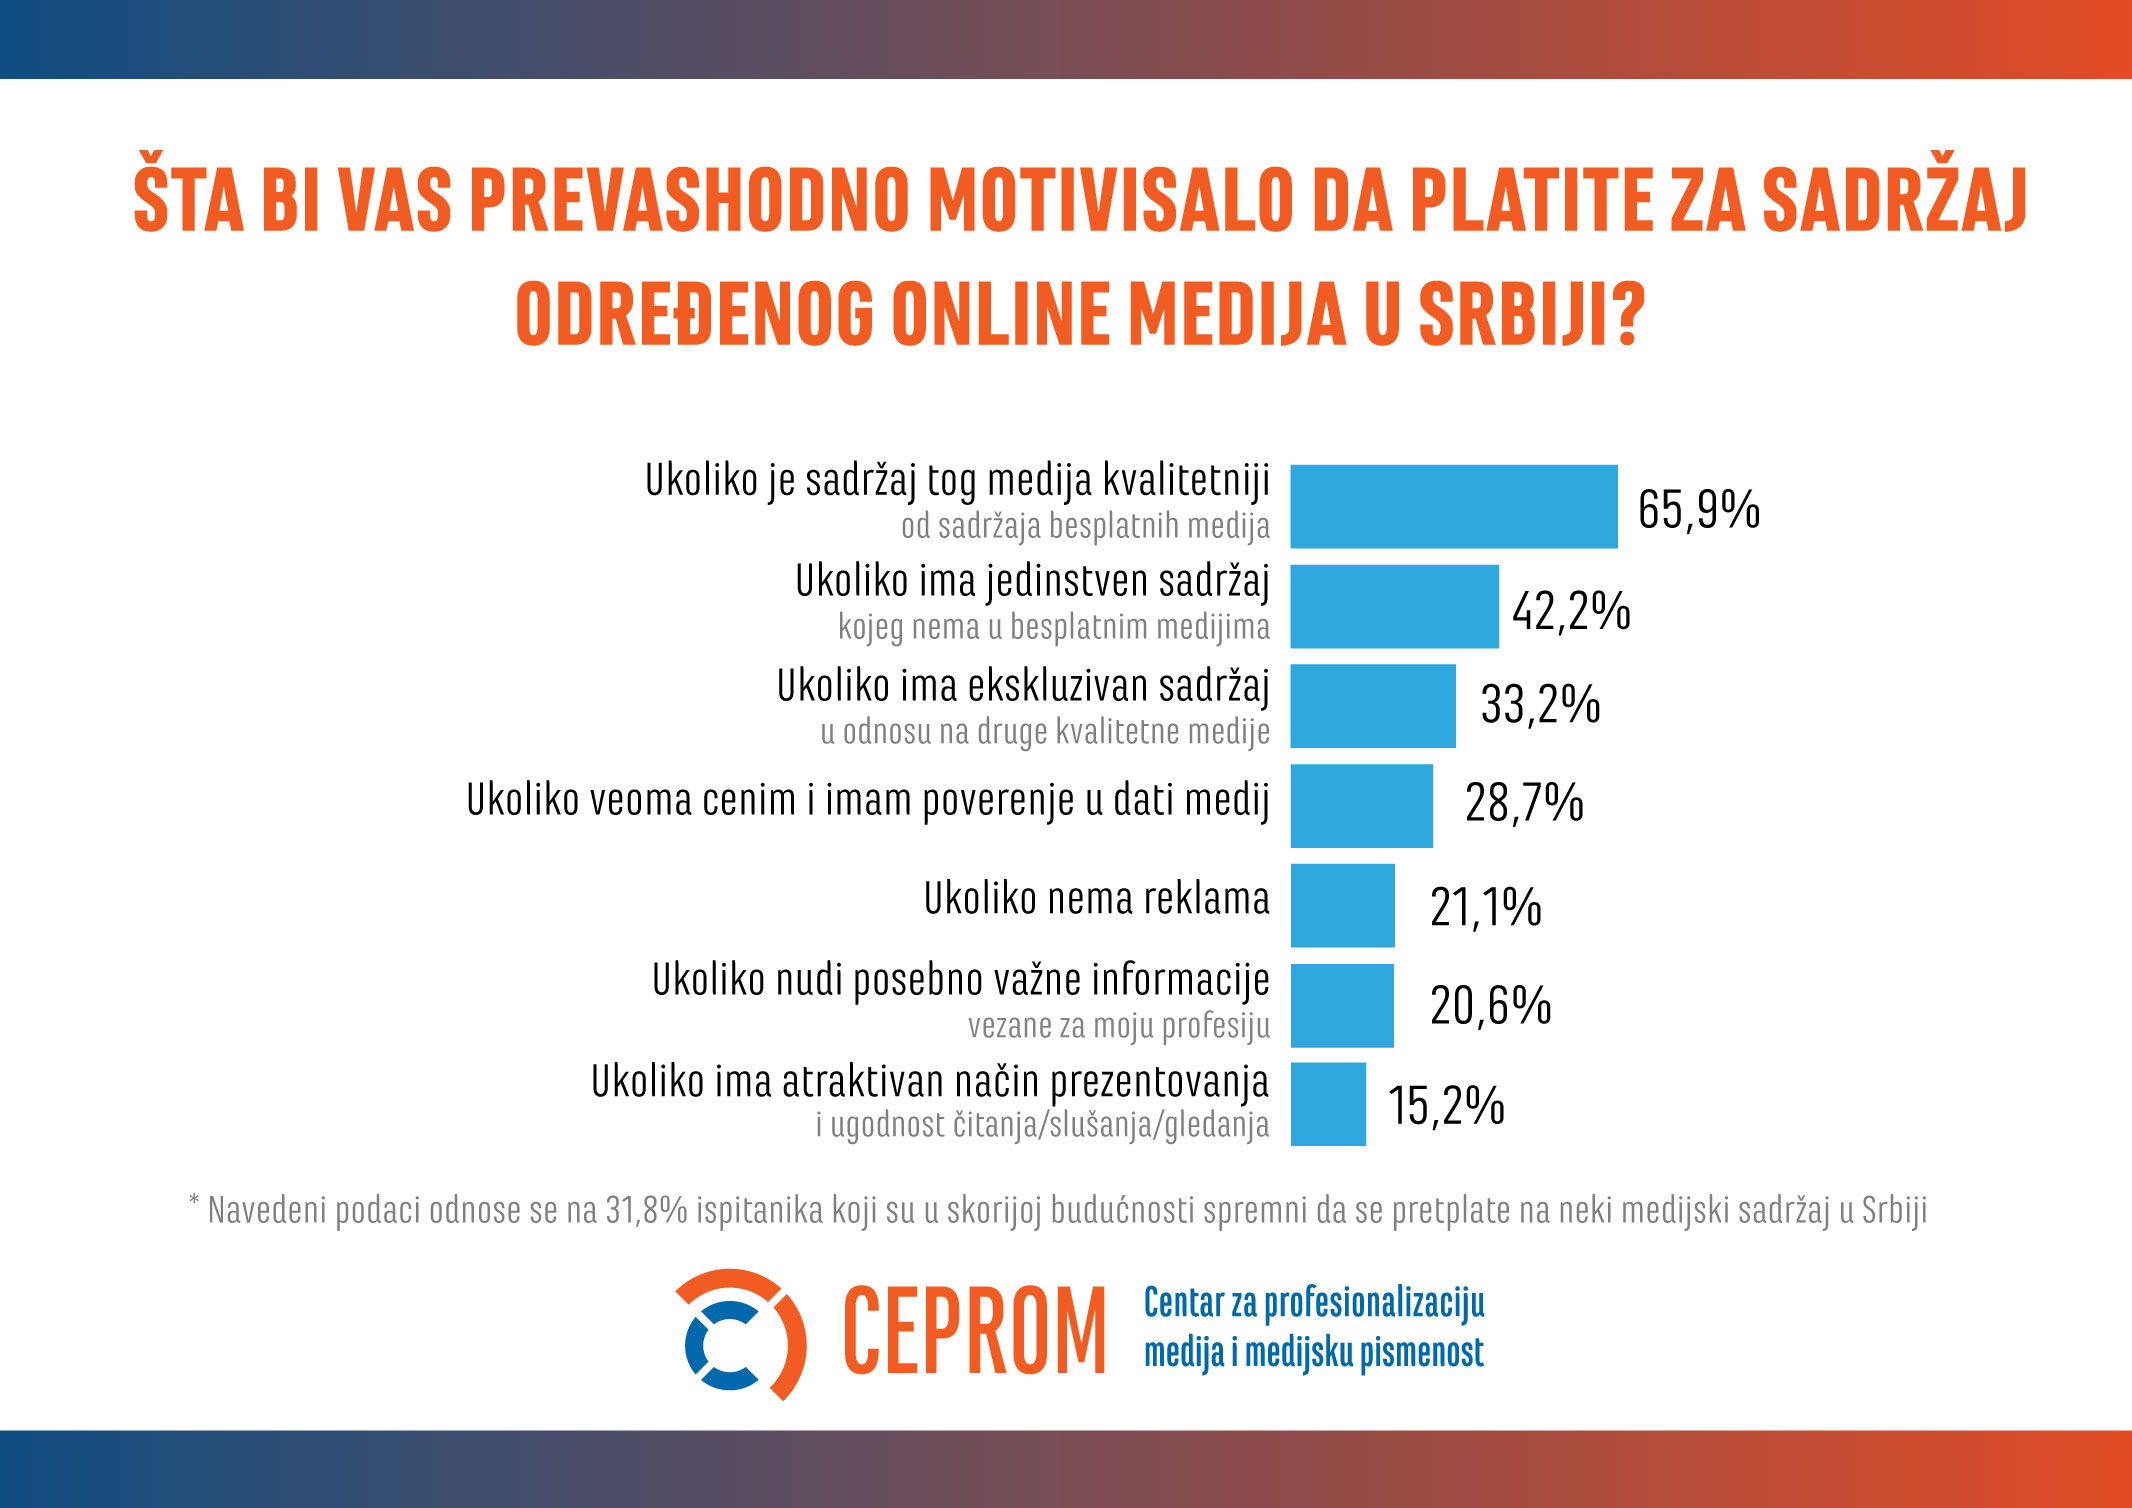 Kvalitetno novinarstvo i ekskluzivan sadržaj ključni za pretplate na onlajn medije u Srbiji 3